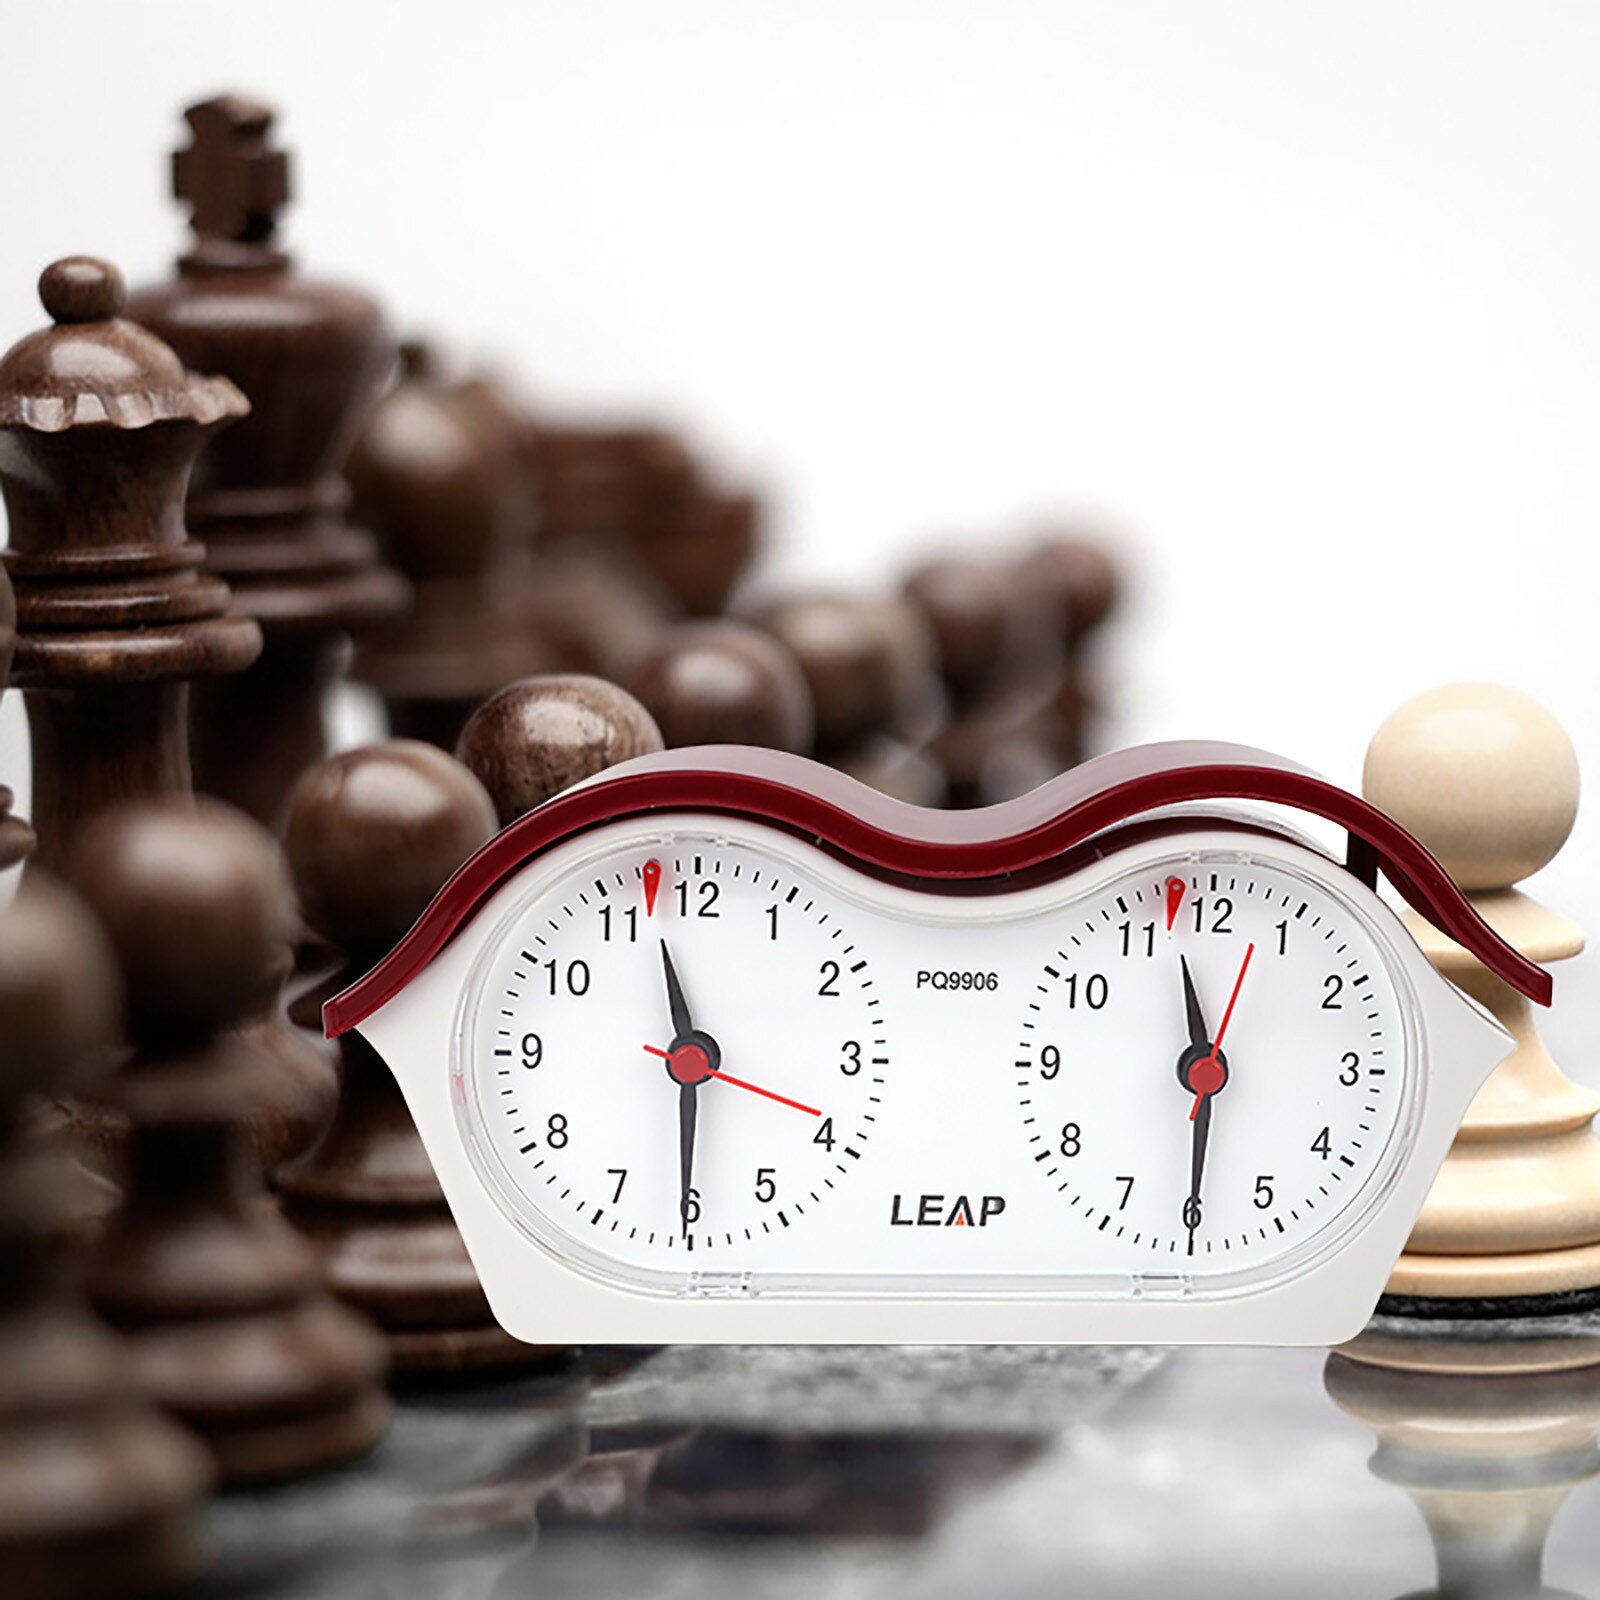 #50 analogowy zegar szachowy-mechaniczny zegar szachowy s Garde-zegar szachowy odliczanie w dół elektronika gadżety 2021 будильк